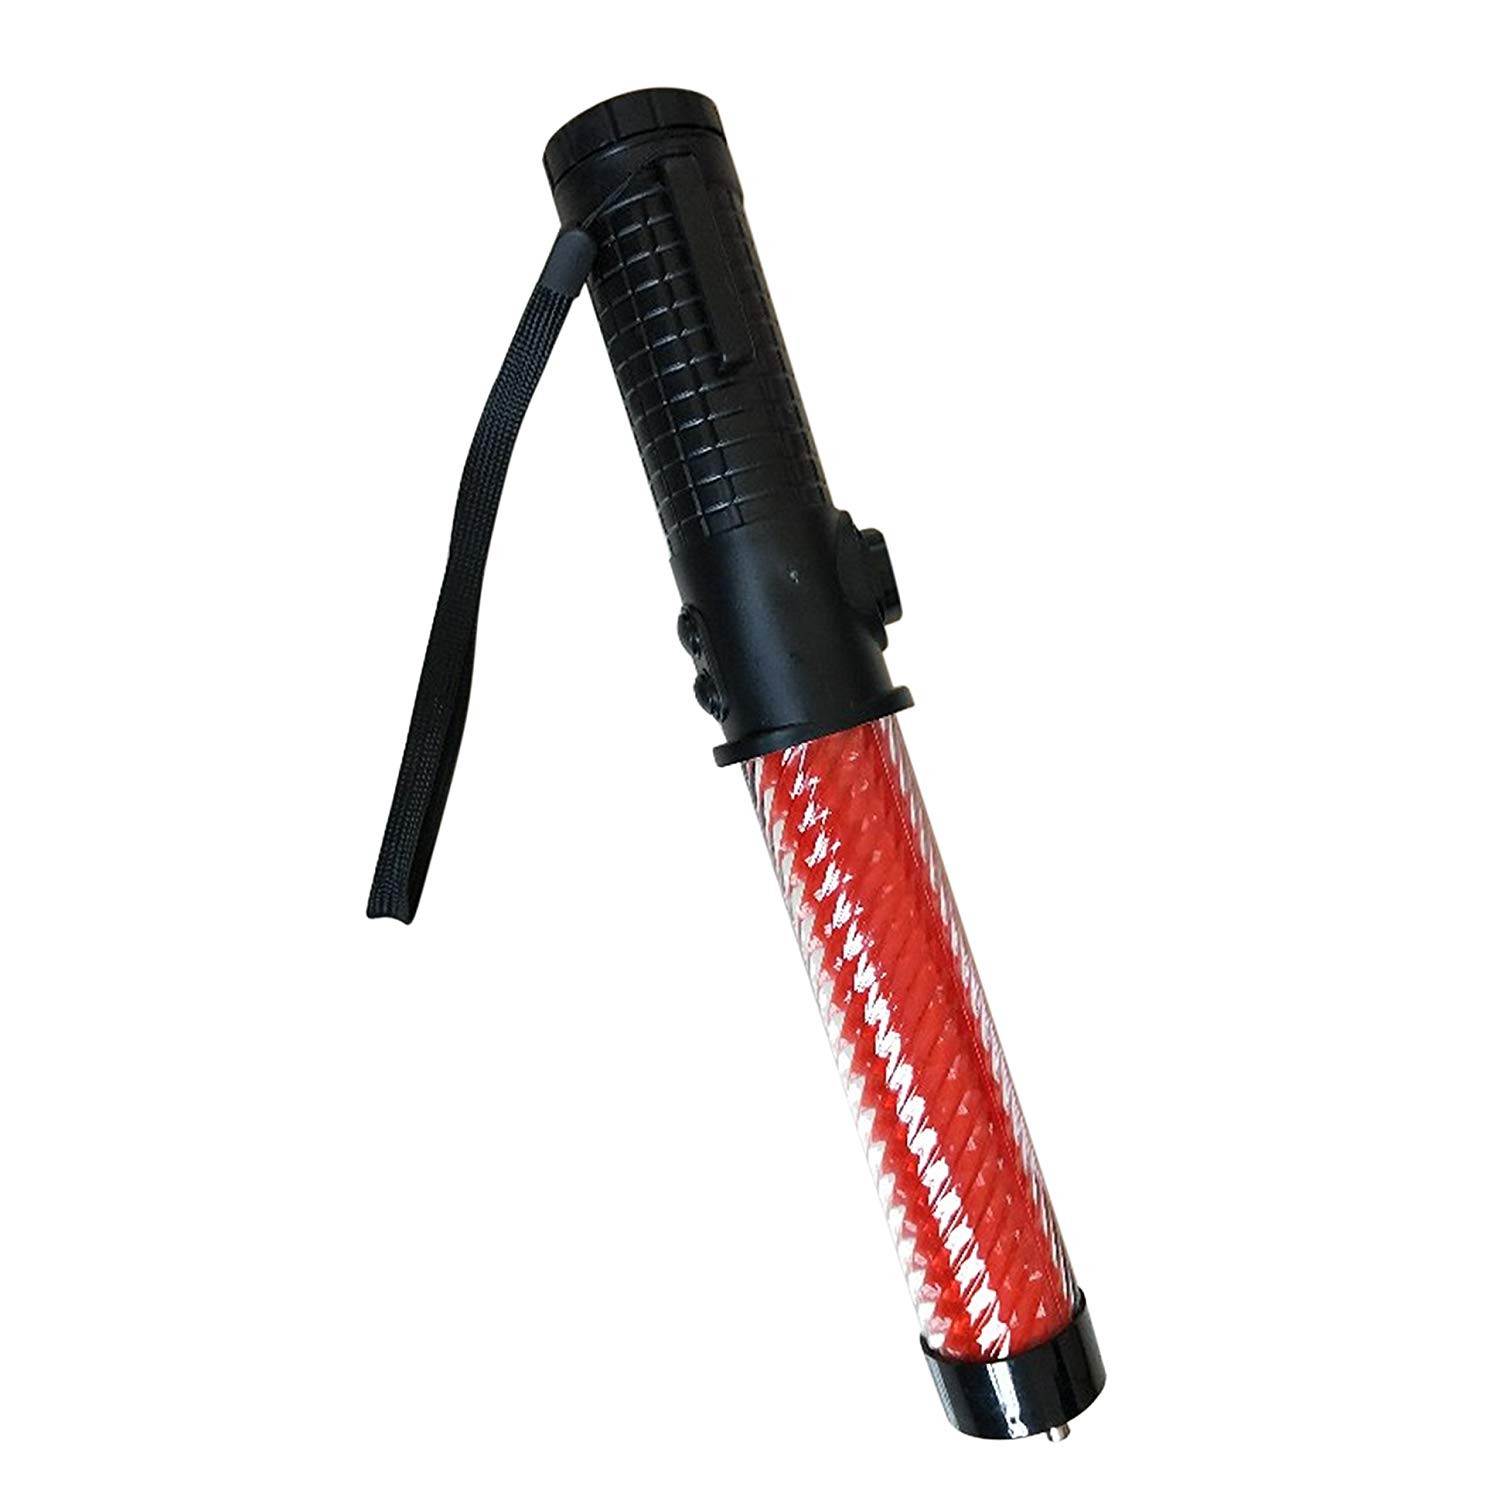  led warning light Roadside Safety Baton Stick